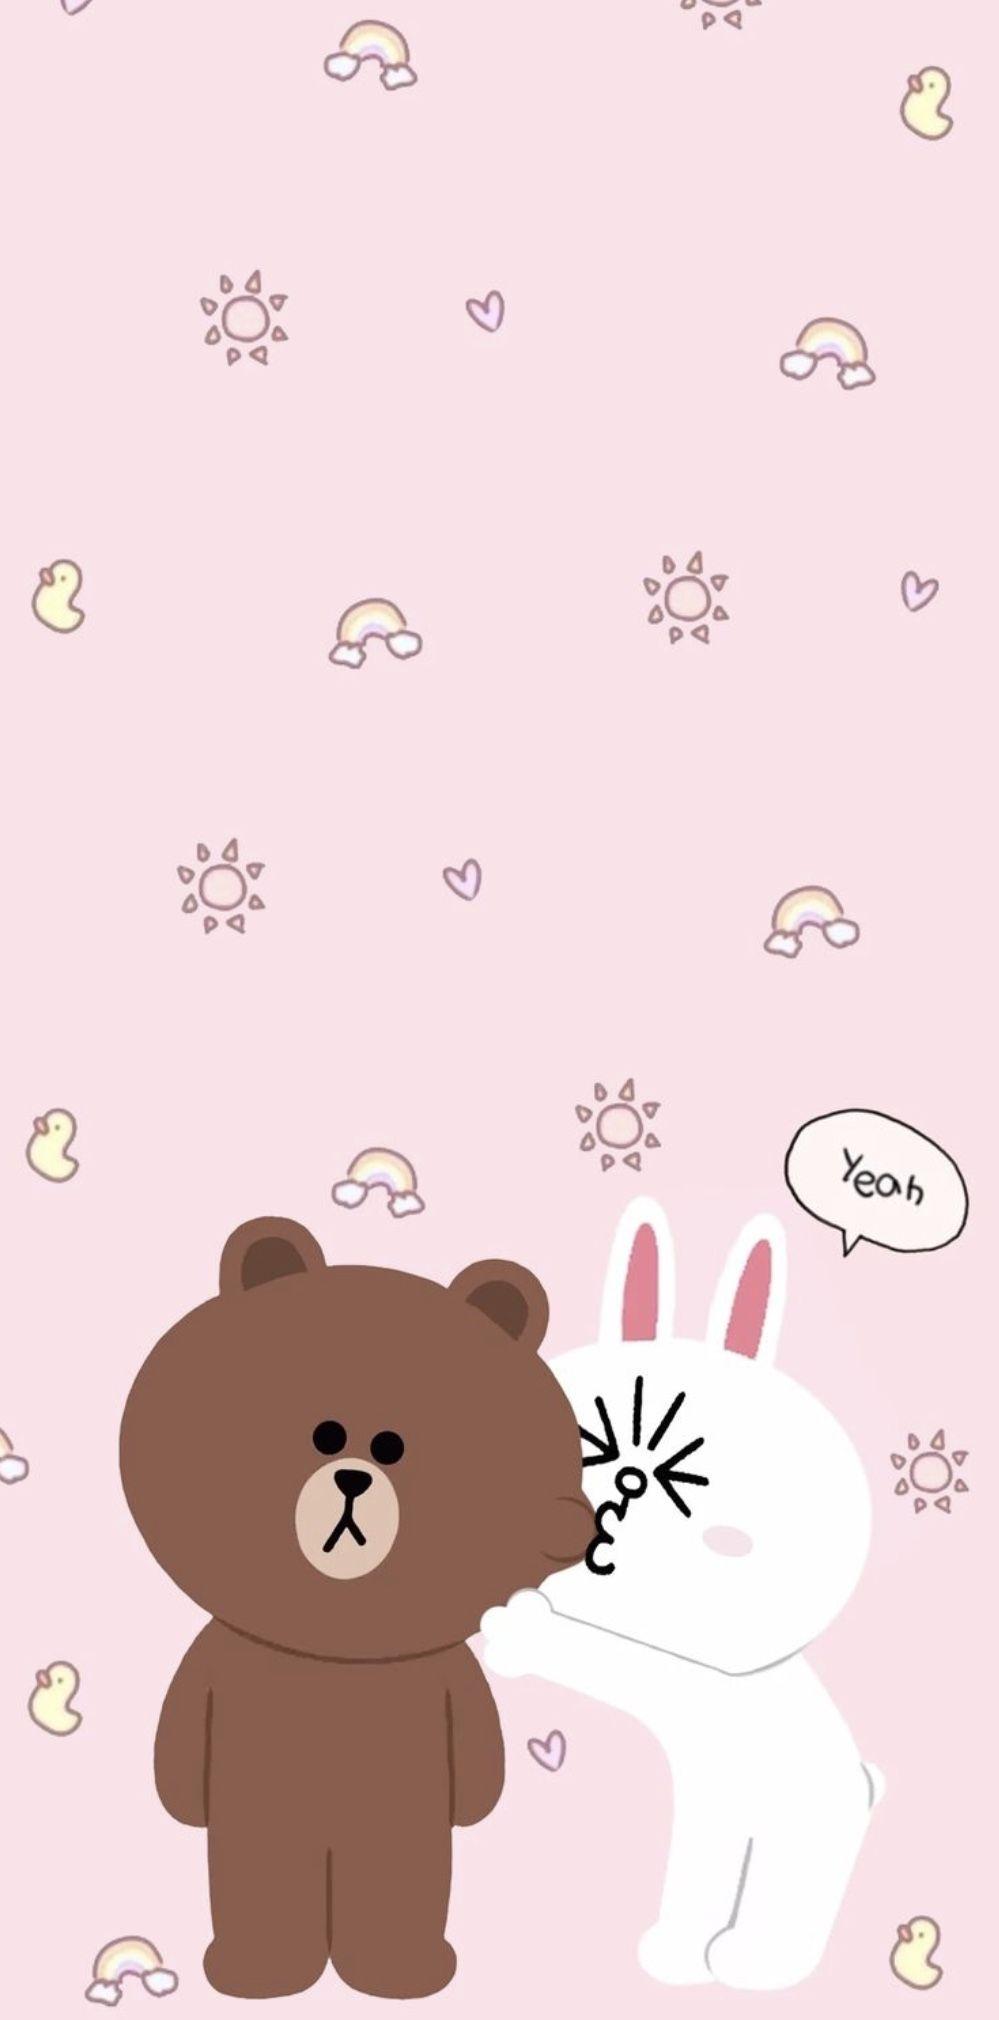 LINE Friends Bear #Line #Friends #Bear #Korea #Korean #app #cute